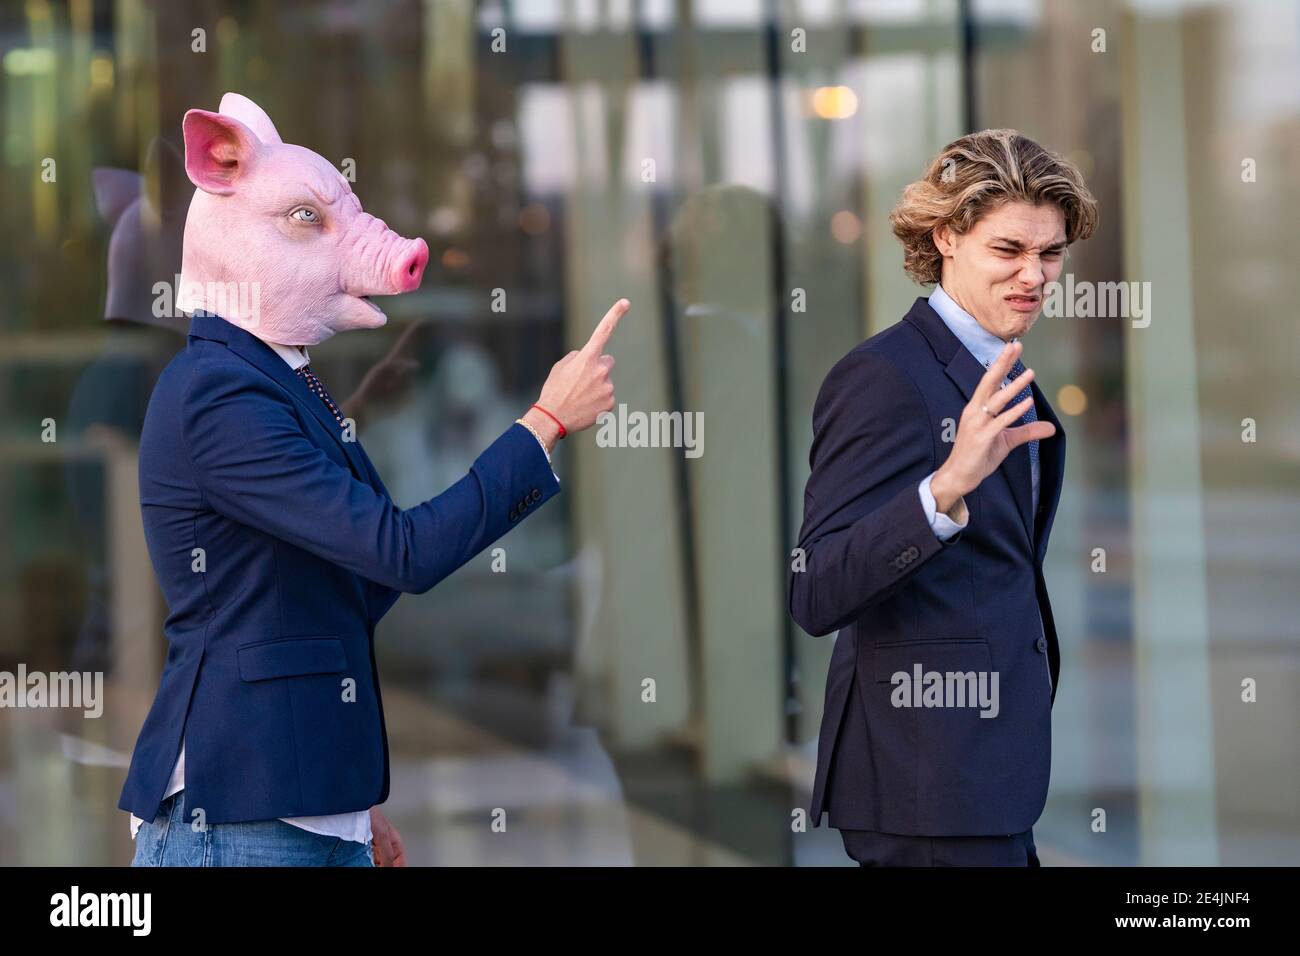 Junge männliche professionelle irritiert durch Streit mit Kollegen in Schwein Maske beim Gehen an der Glaswand Stockfoto